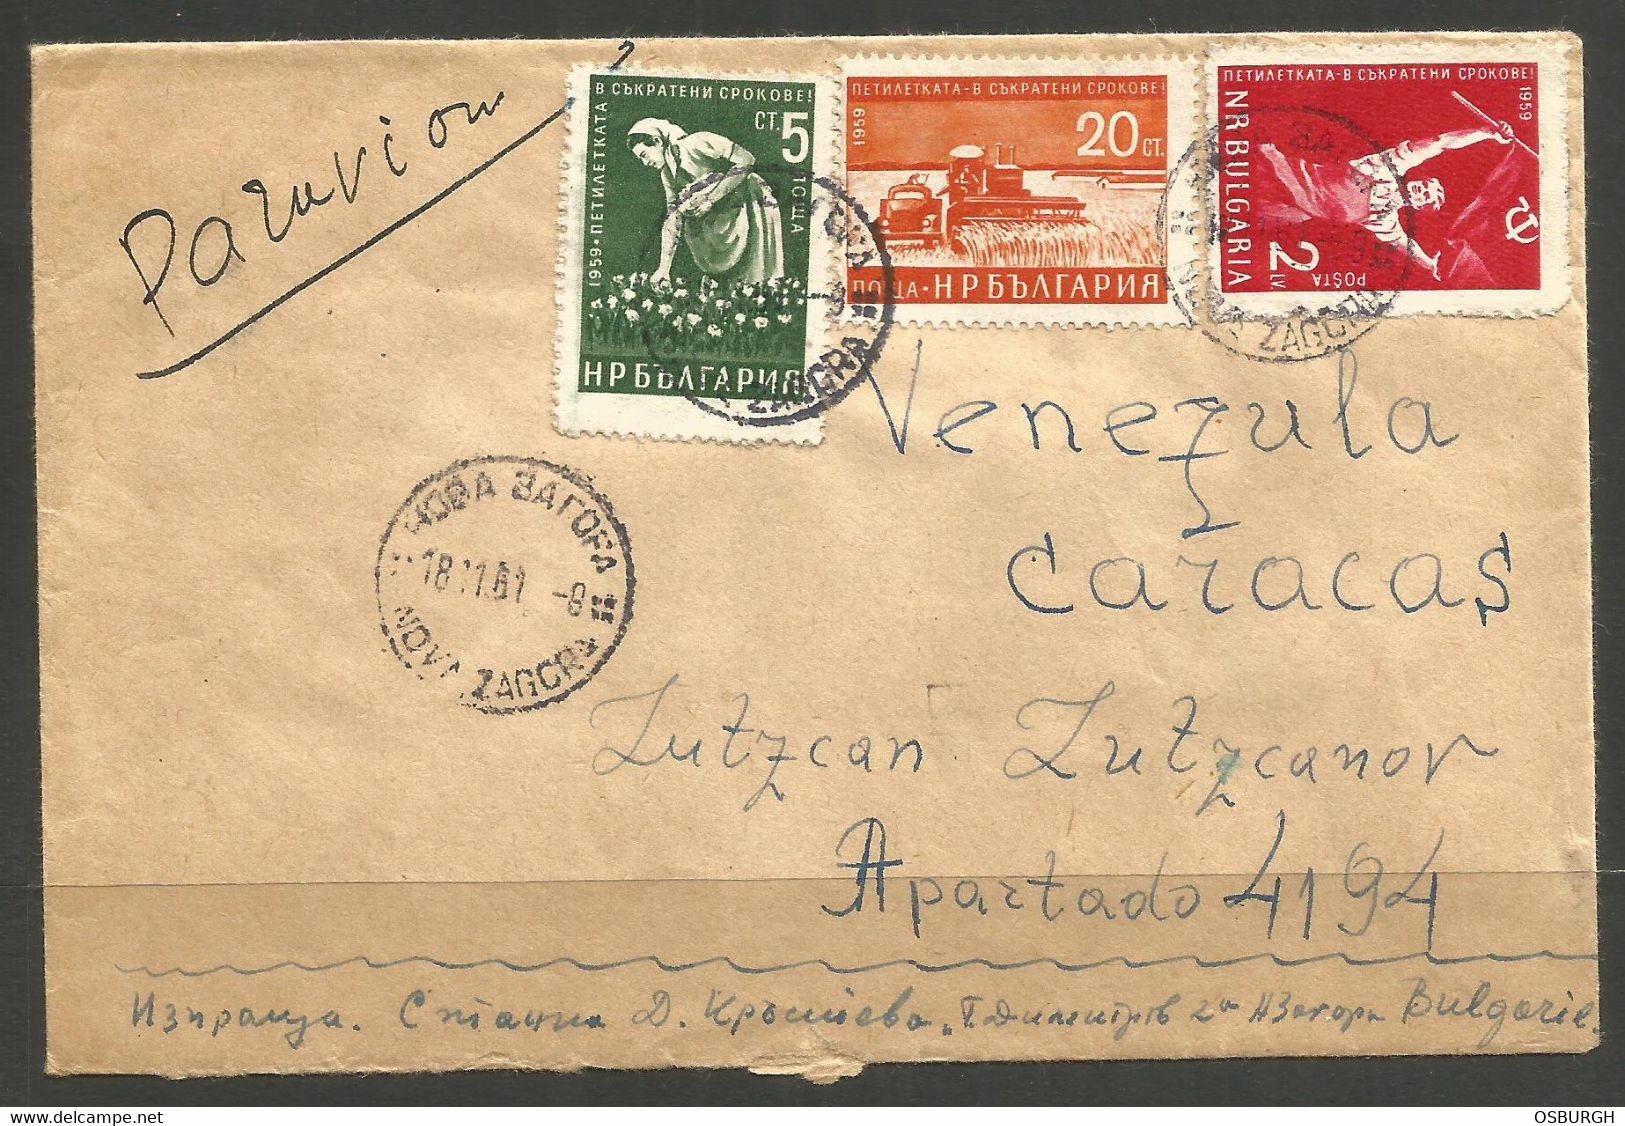 BULGARIA / VENEZUELA. 1961. AIR MAIL COVER. NOVA ZAGORA TO CARACAS. - Covers & Documents